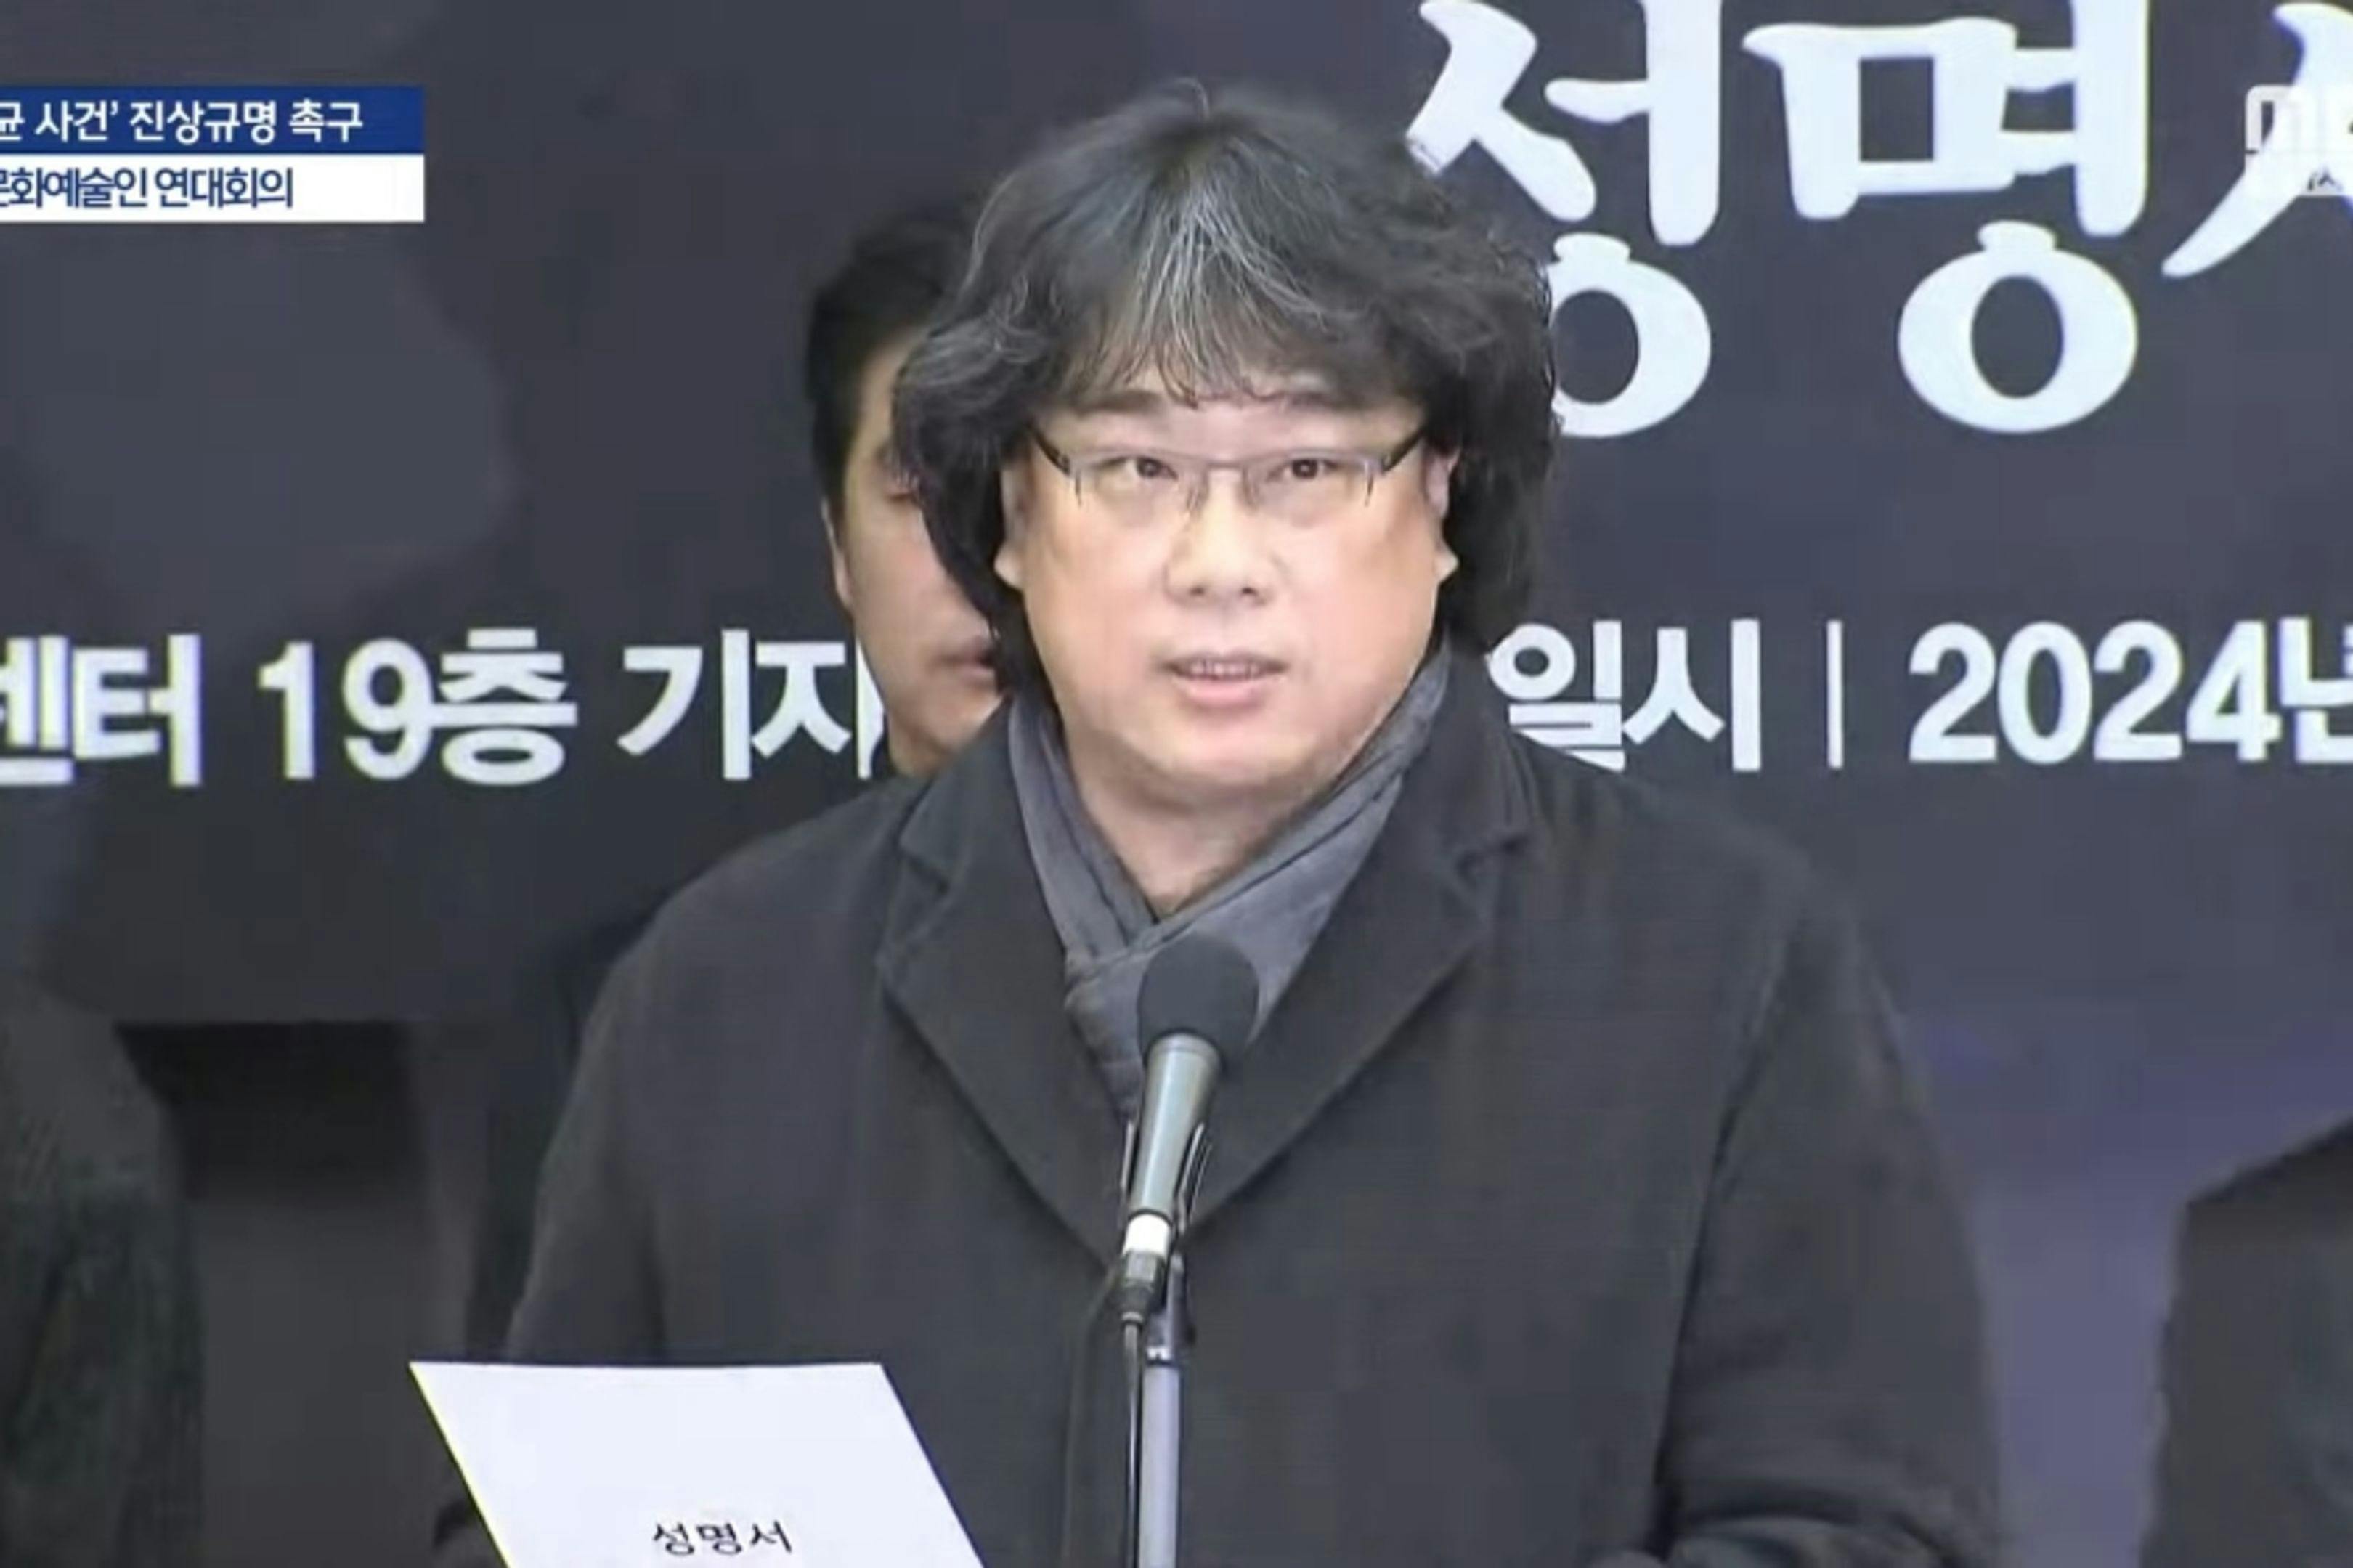 Imagen de la comparecencia de prensa de Bong Joon-ho en Seúl el 12 de enero de 2024